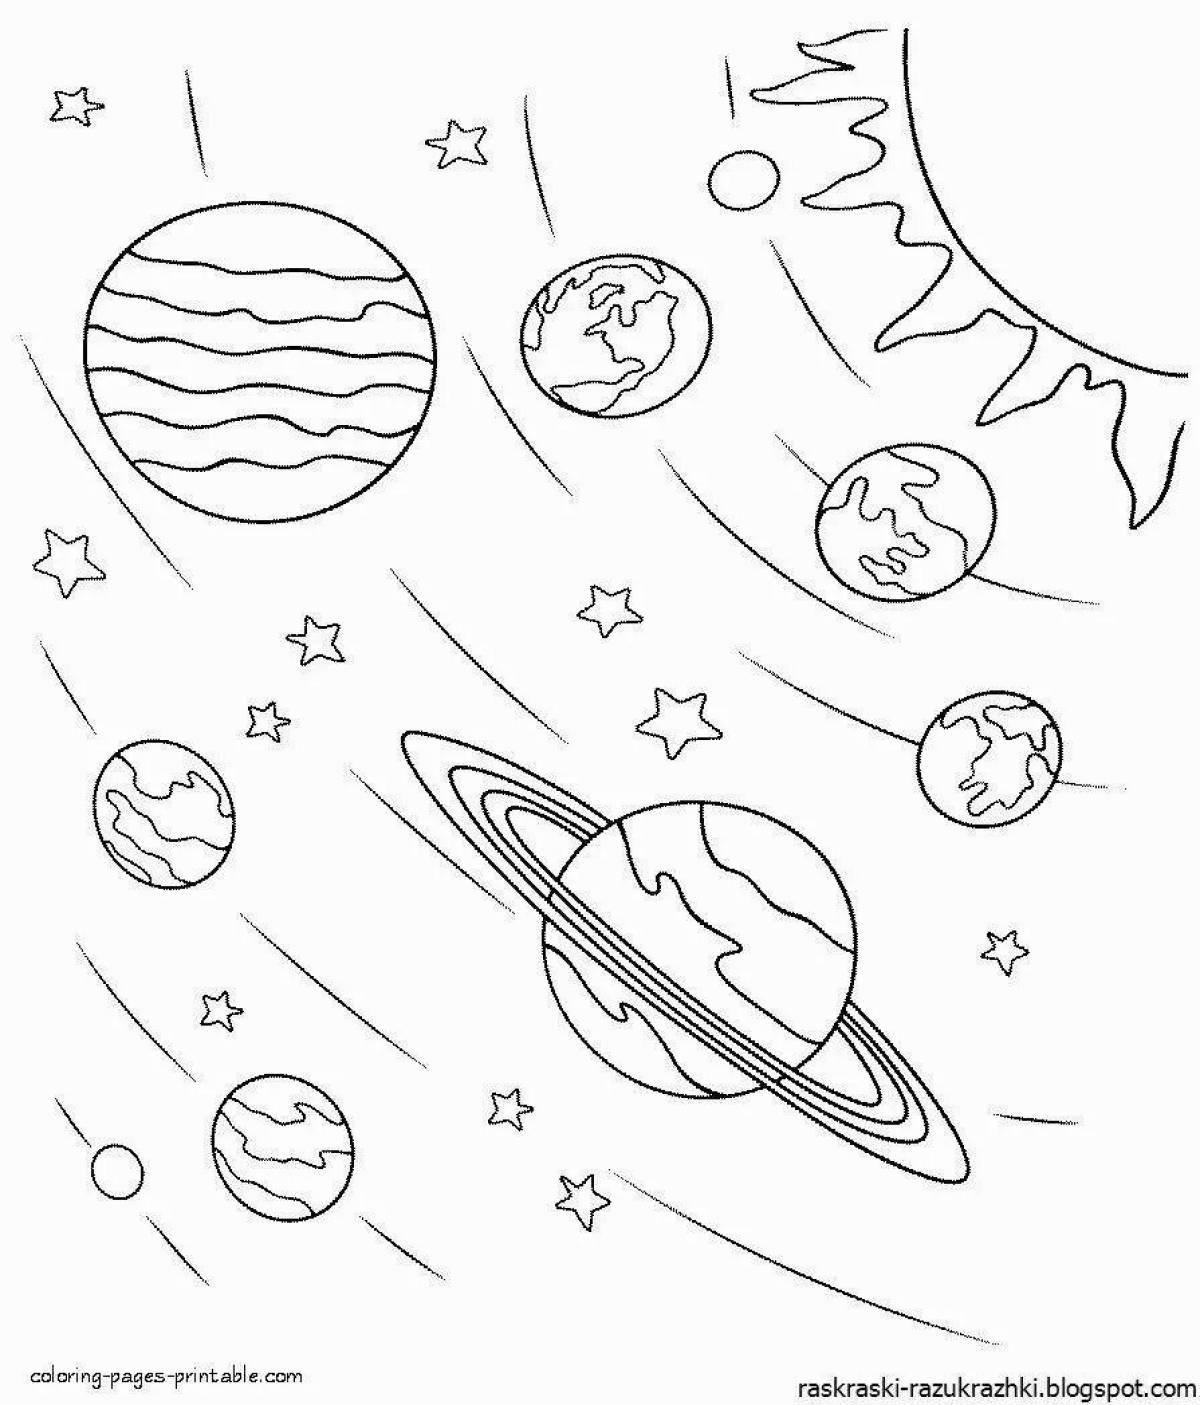 Игривая страница-раскраска «космос и планеты» для детей